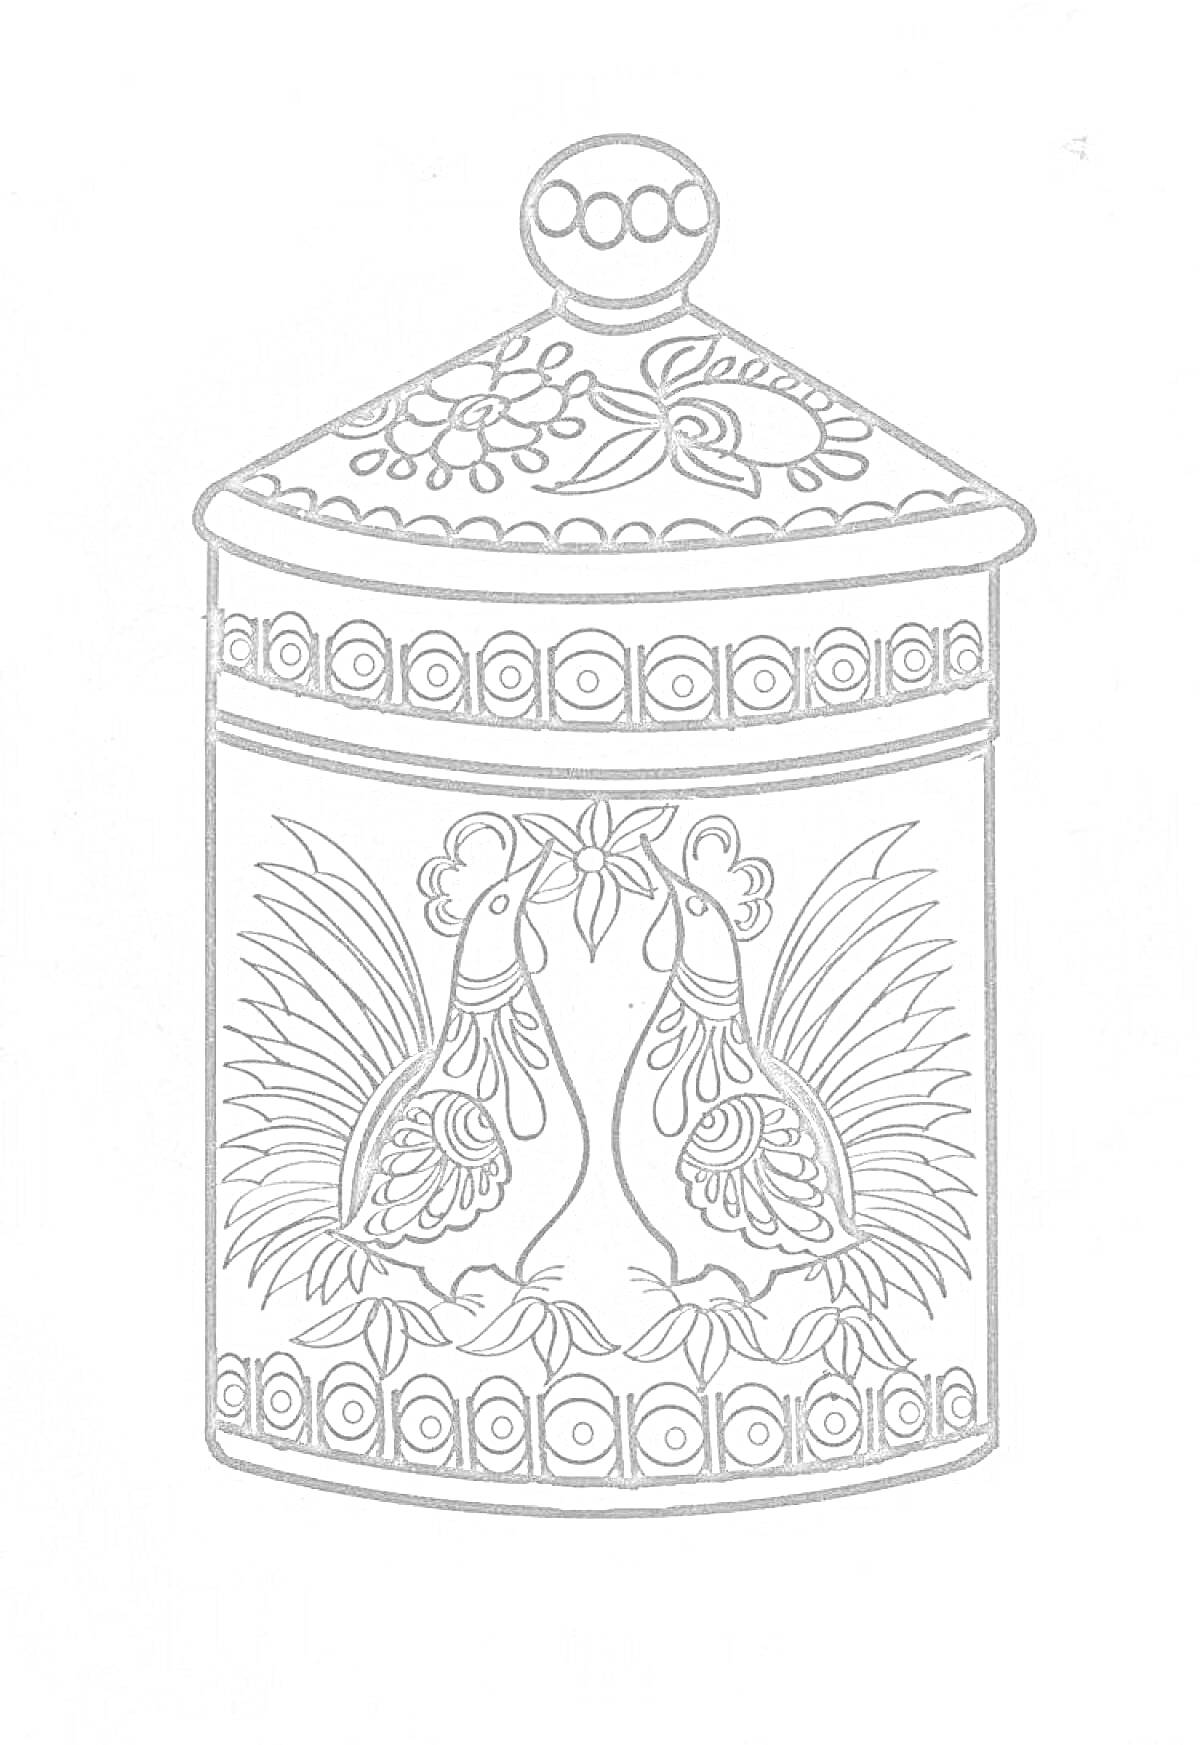 Раскраска Разделочная доска с городецкой росписью, изображающая два павлина, цветочные мотивы и геометрические узоры